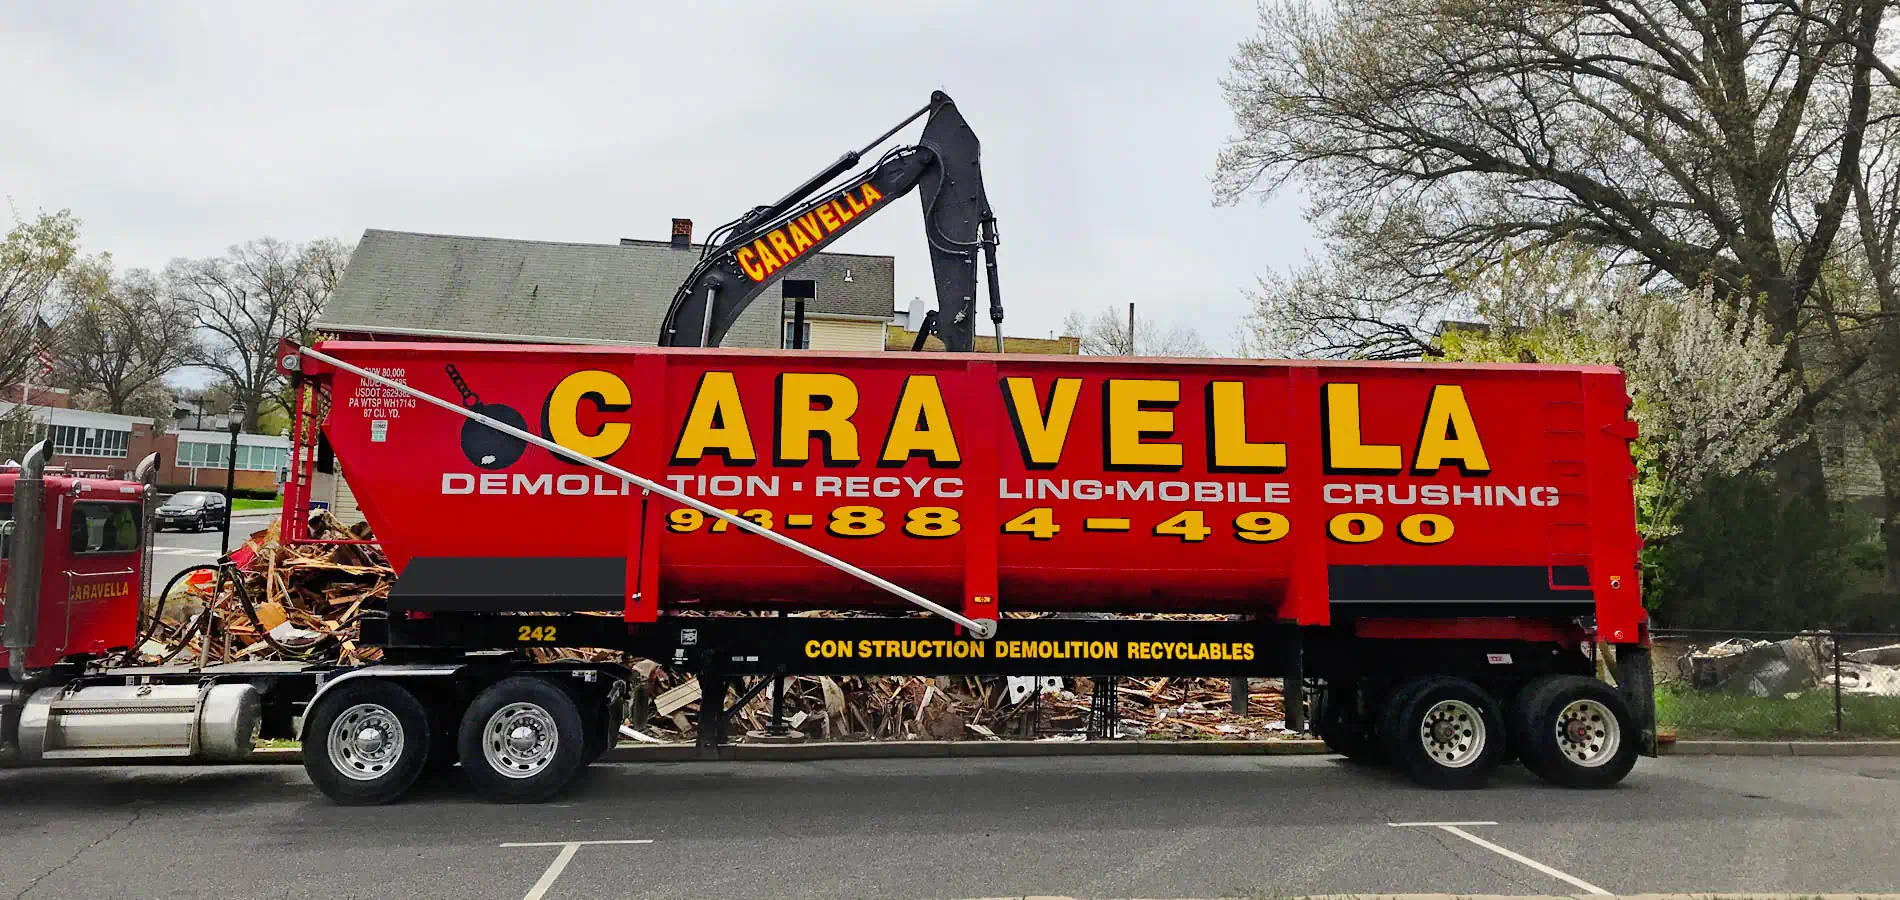 Demolition Services in Hoboken, NJ 07030 | Caravella Demolition